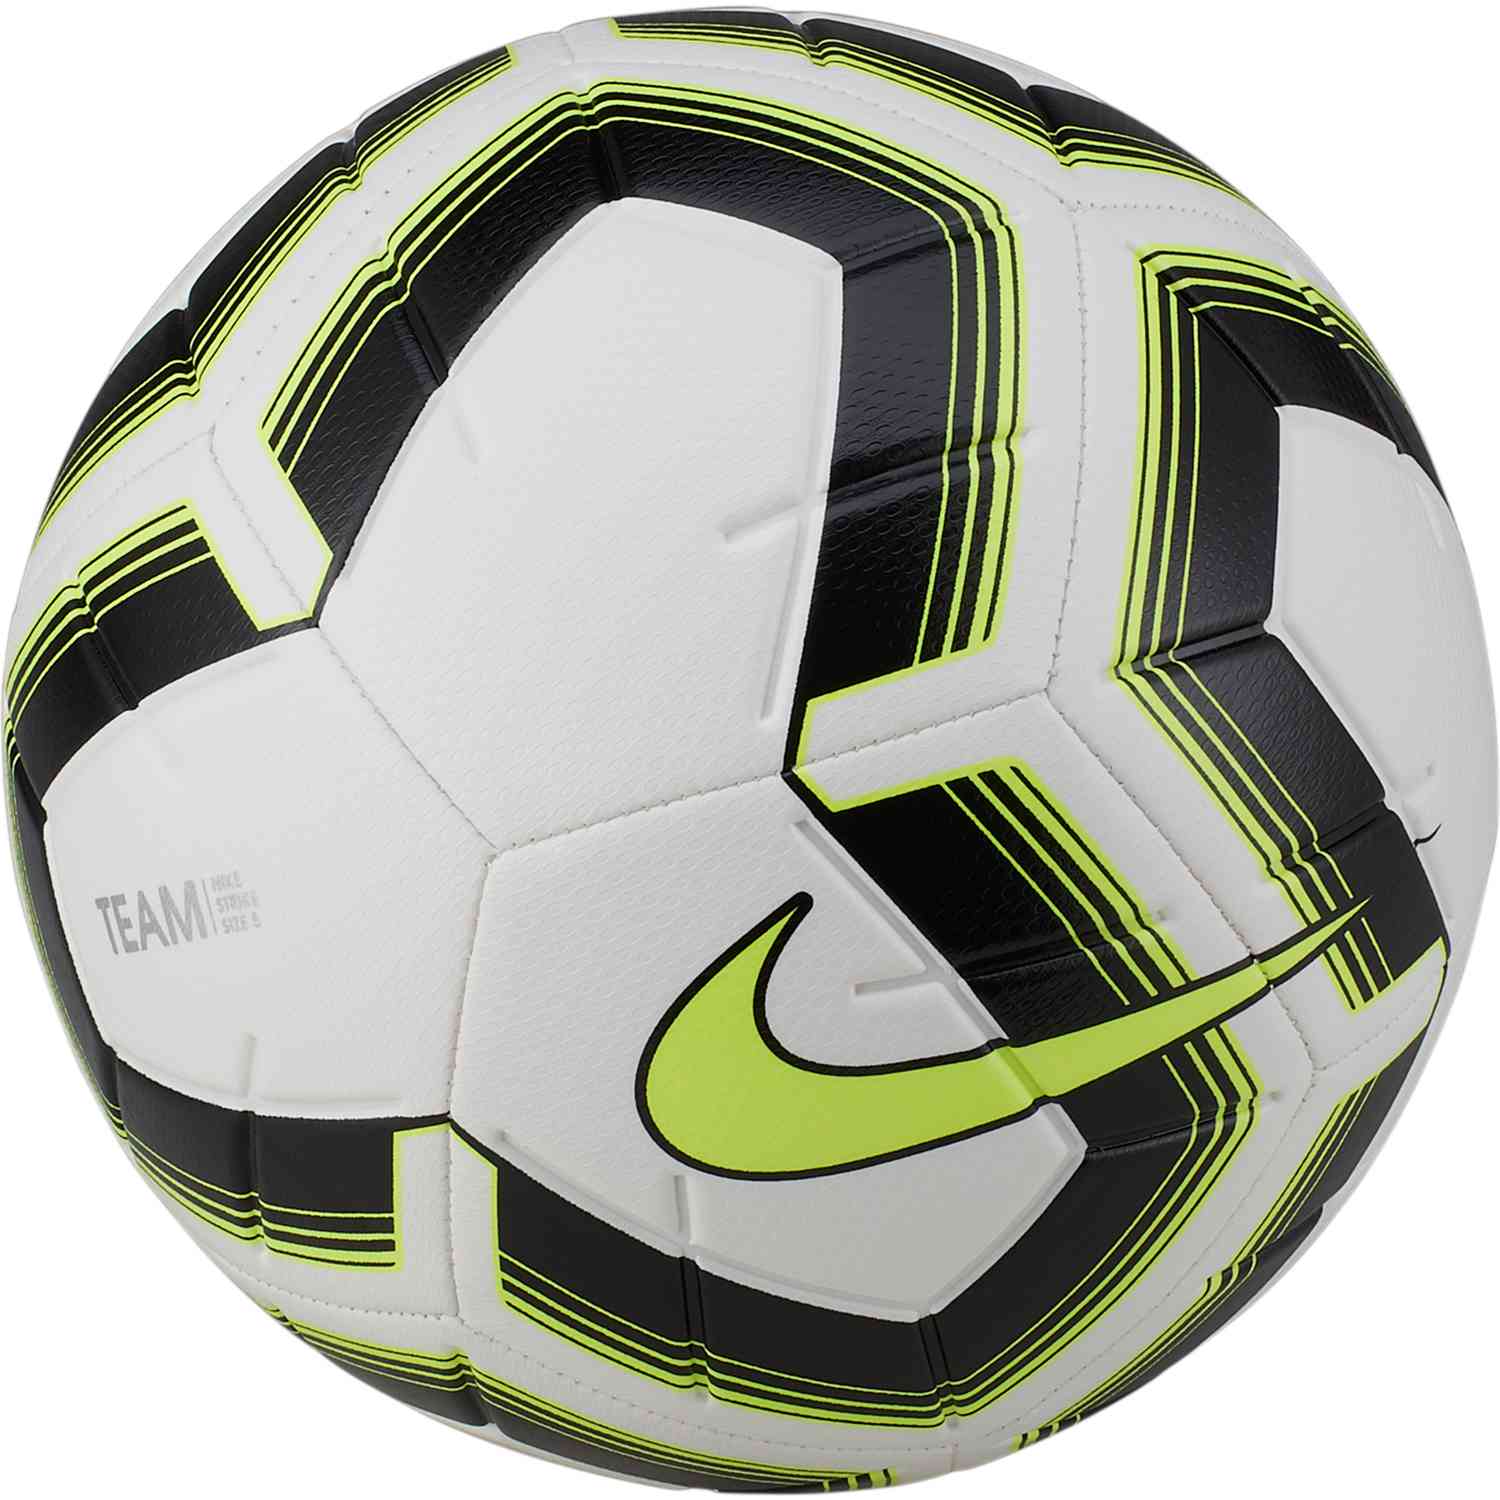 nike footballx strike soccer ball